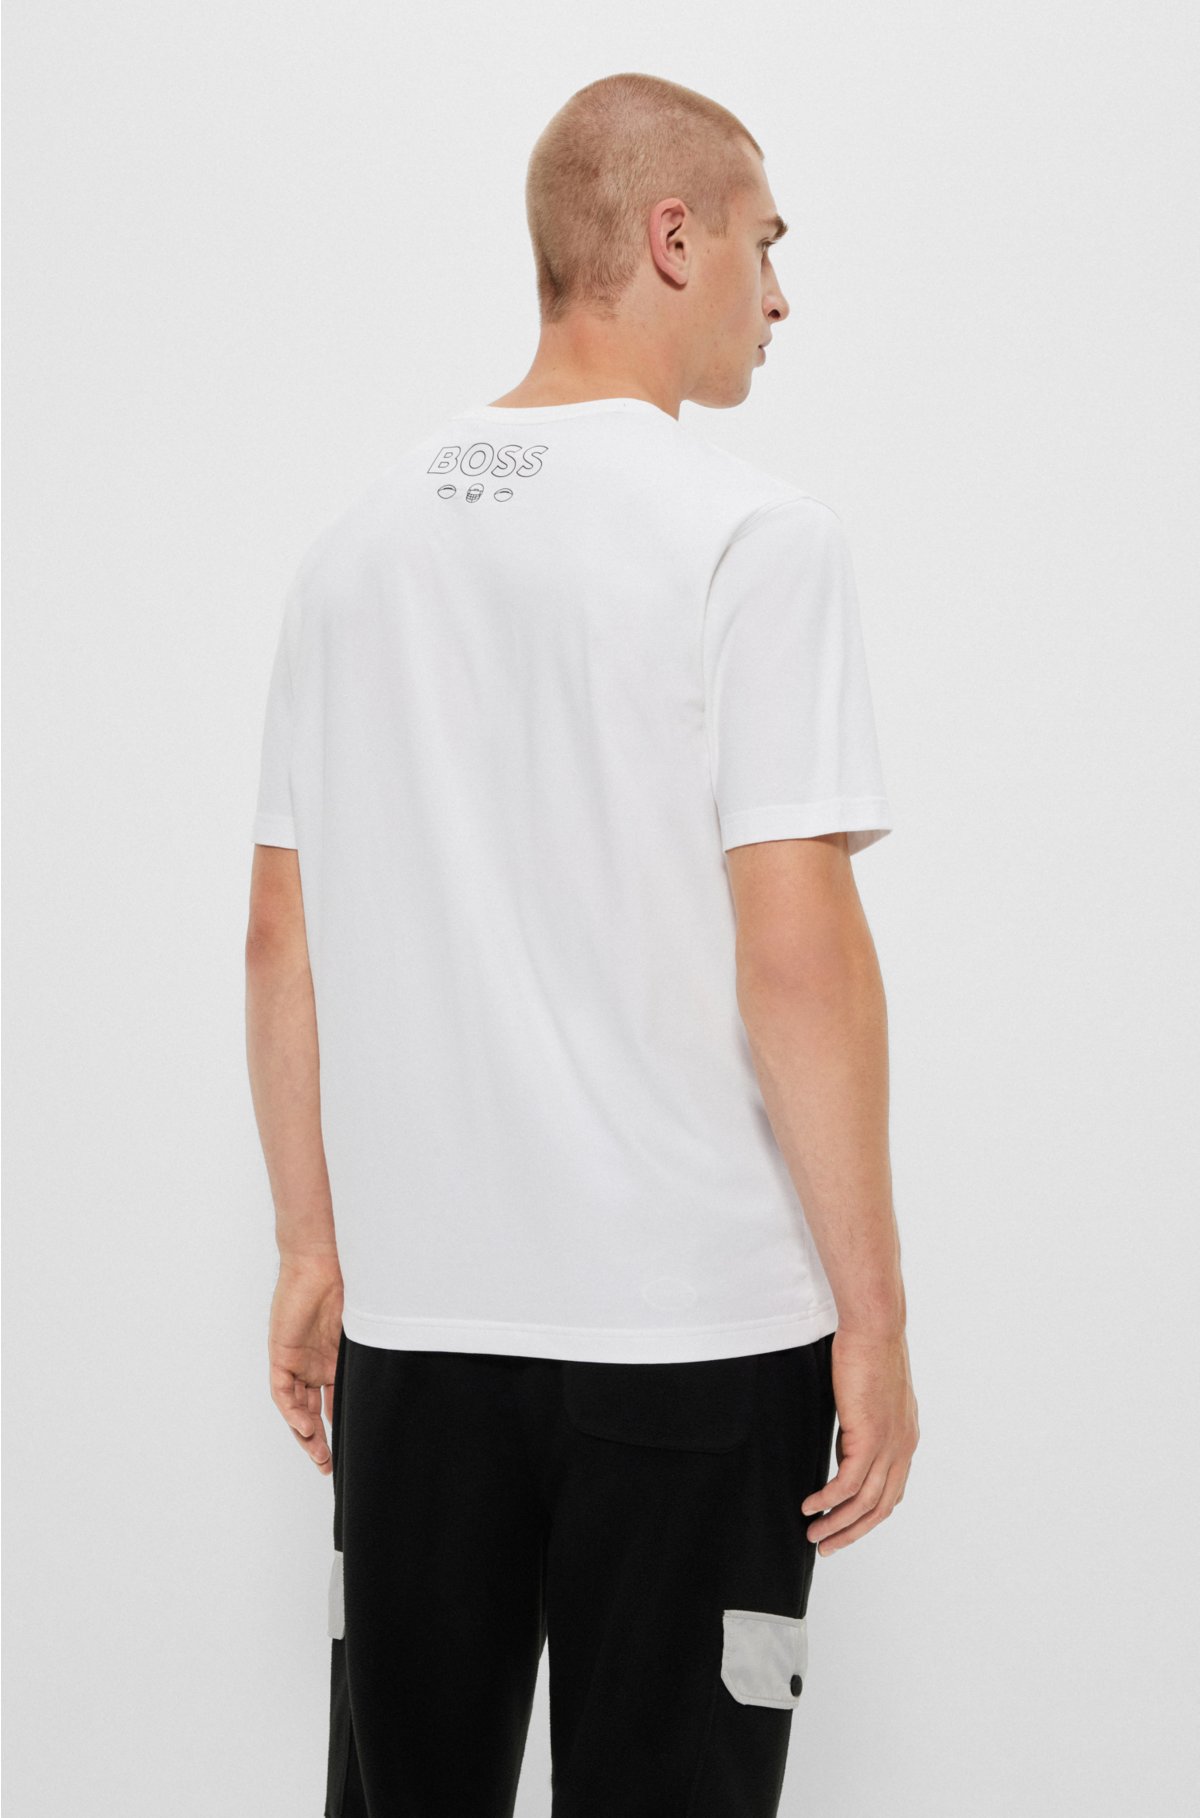 Hugo Boss Boss By Men's Boss X Nfl T-shirt In Open White